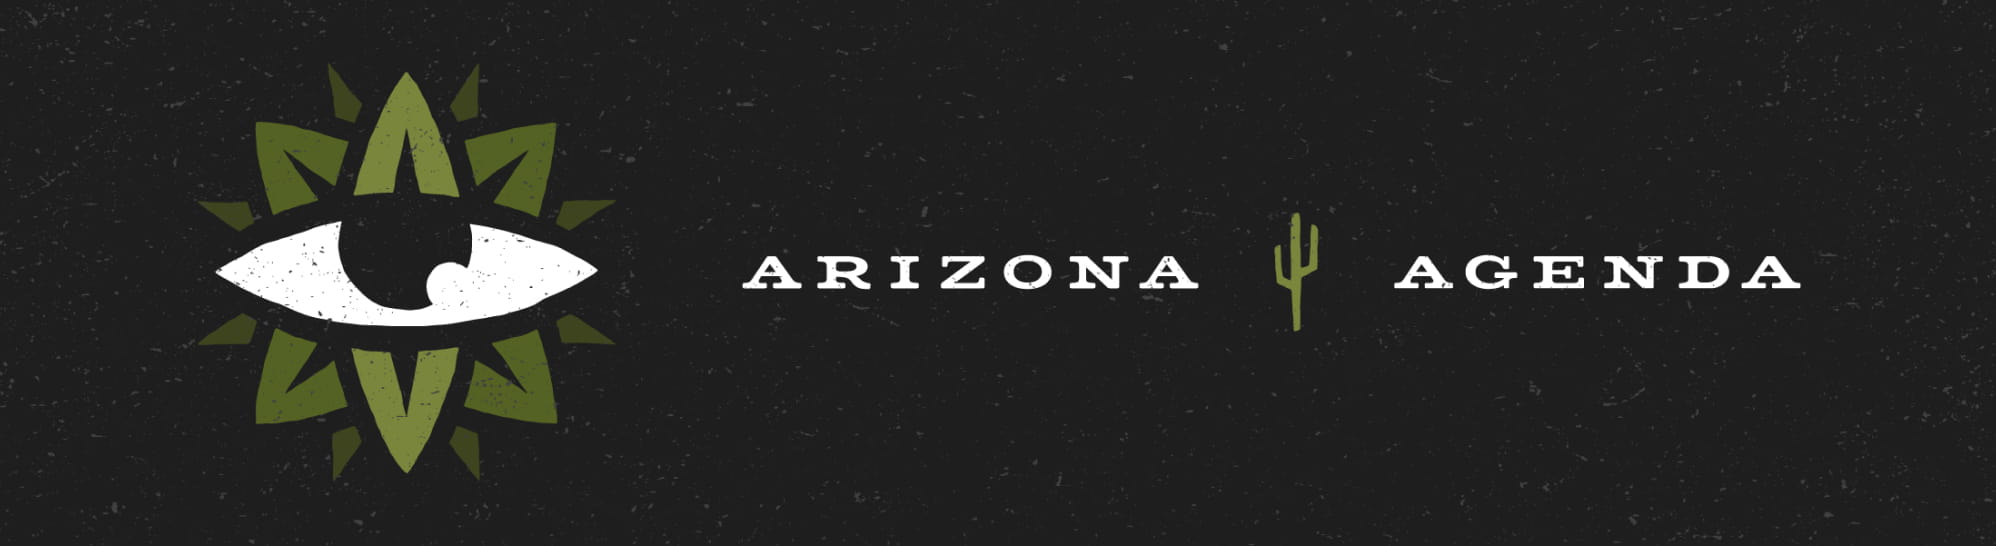 Arizona-Agenda_Substack_Header